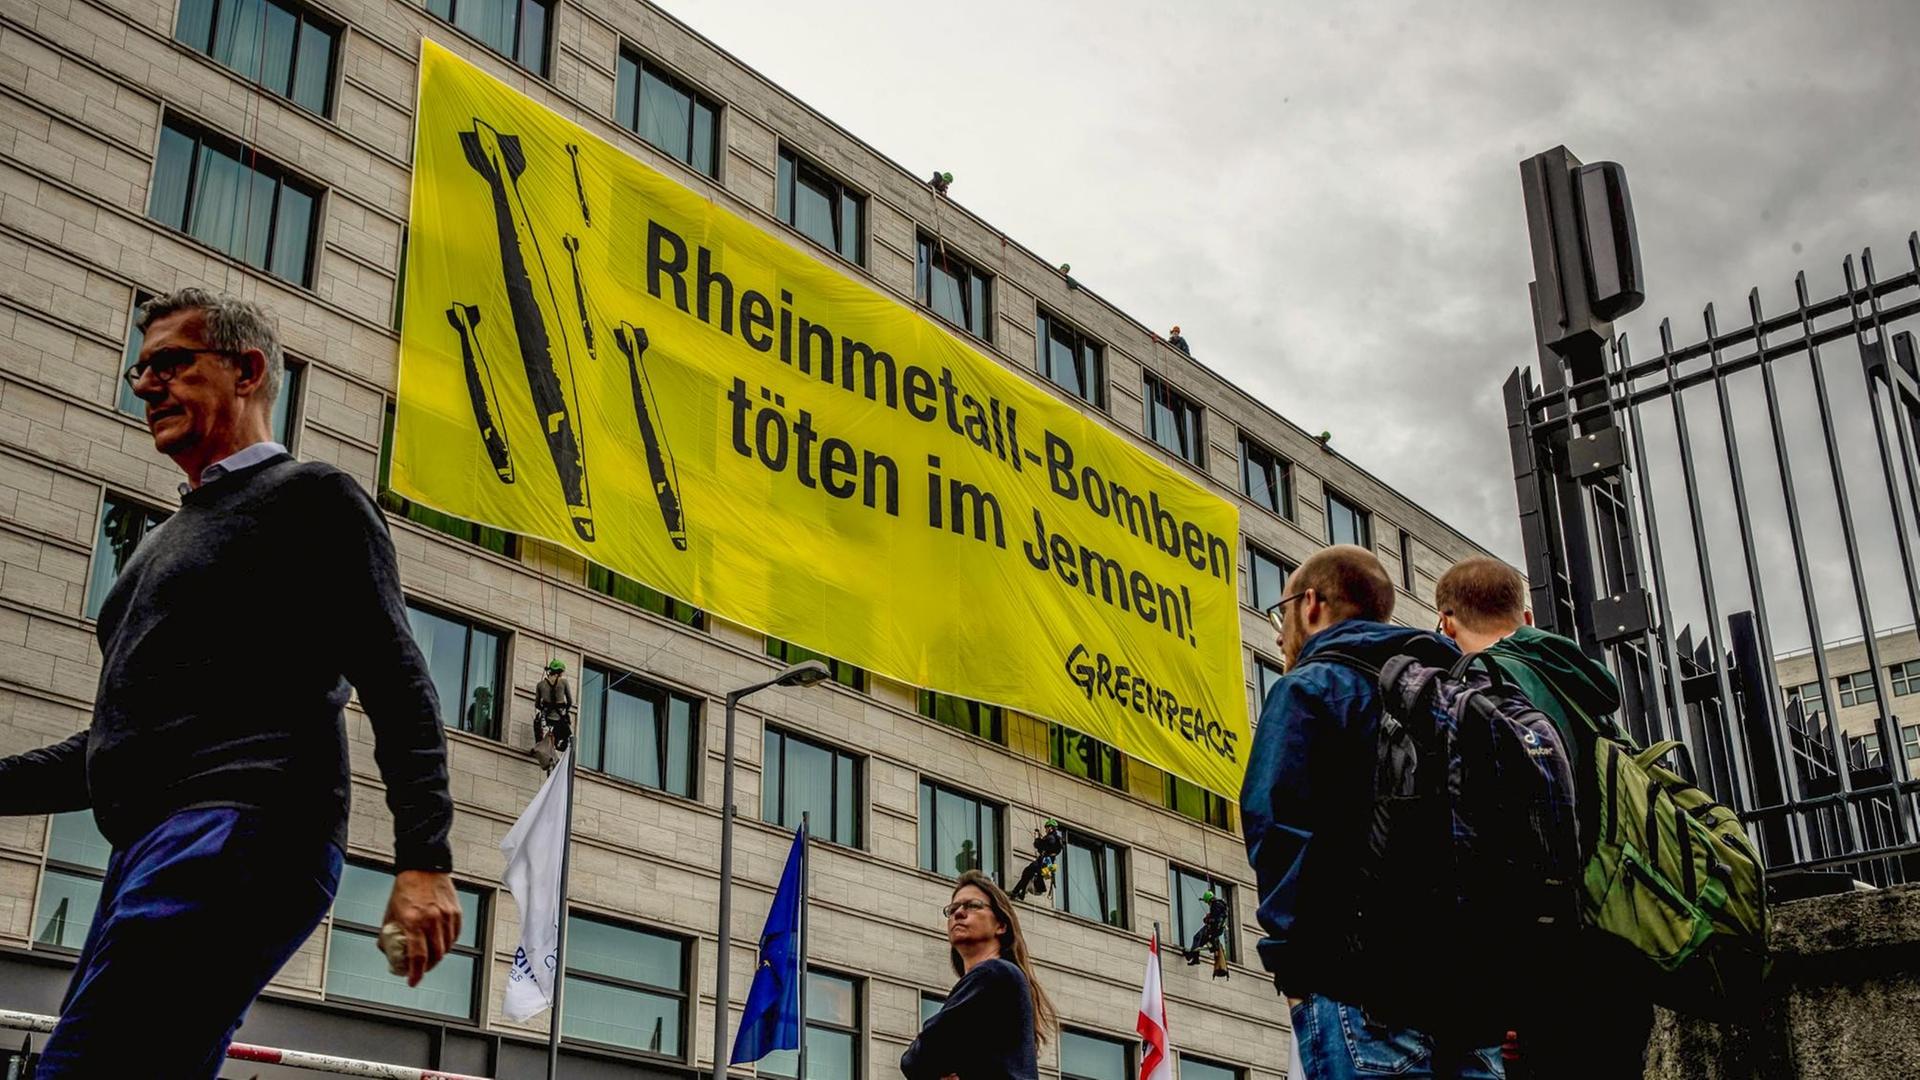 Aktivisten von Greenpeace haben ein Plakat mit der Aufschrift "Rheinmetall-Bomben töten im Jemen!" am Veranstaltungshotel der Rheinmetall Hauptversammlung entrollt. Der Düsseldorfer Konzern hat eine Rüstungs- und eine Autozulieferer-Sparte.